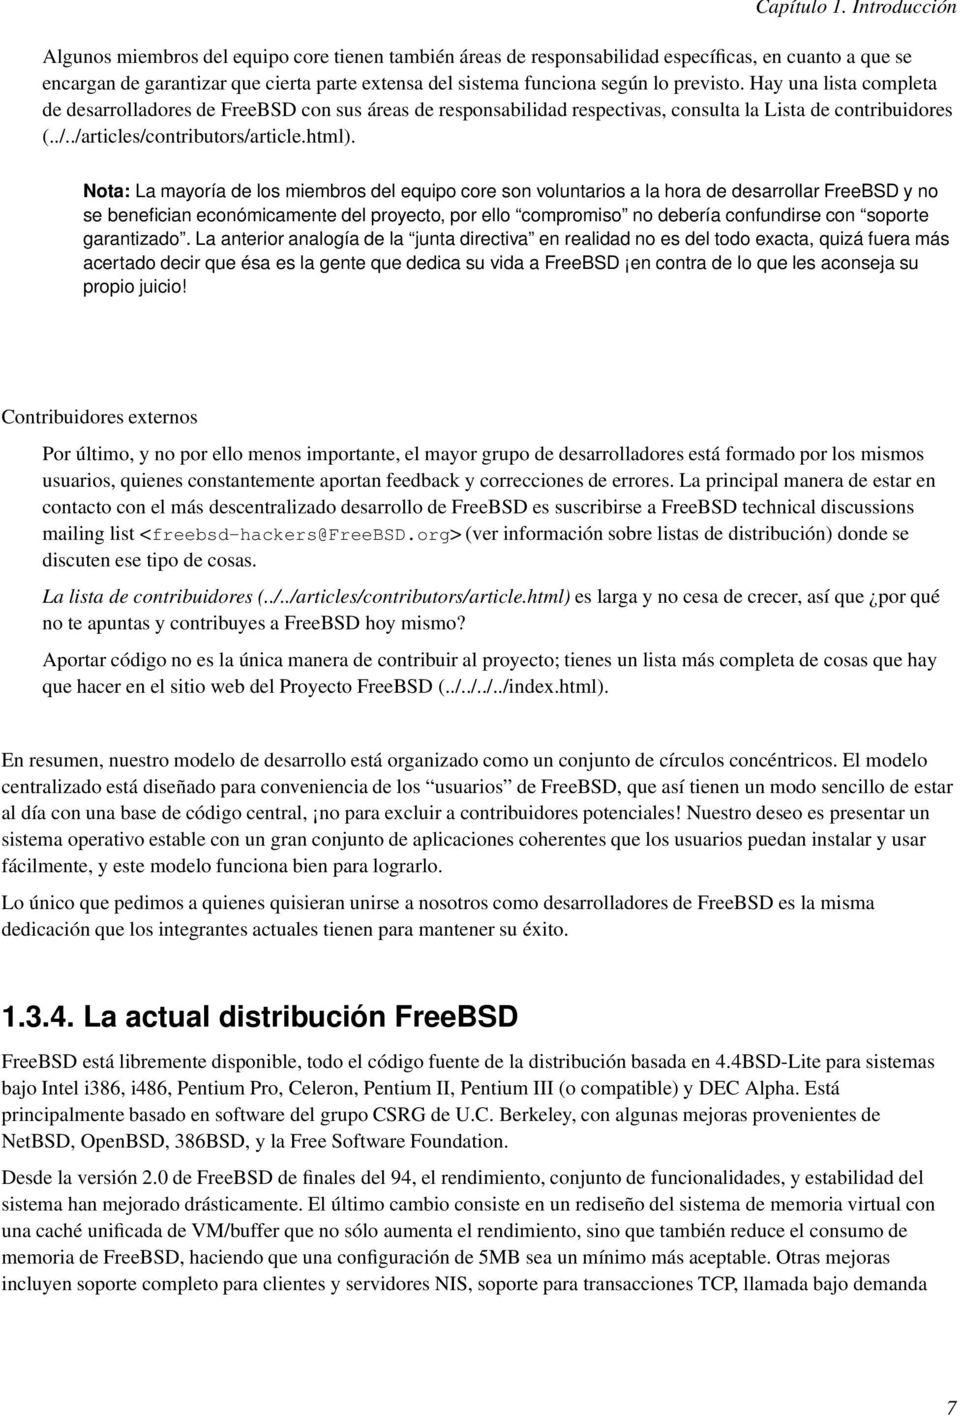 previsto. Hay una lista completa de desarrolladores de FreeBSD con sus áreas de responsabilidad respectivas, consulta la Lista de contribores (../../articles/contributors/article.html).